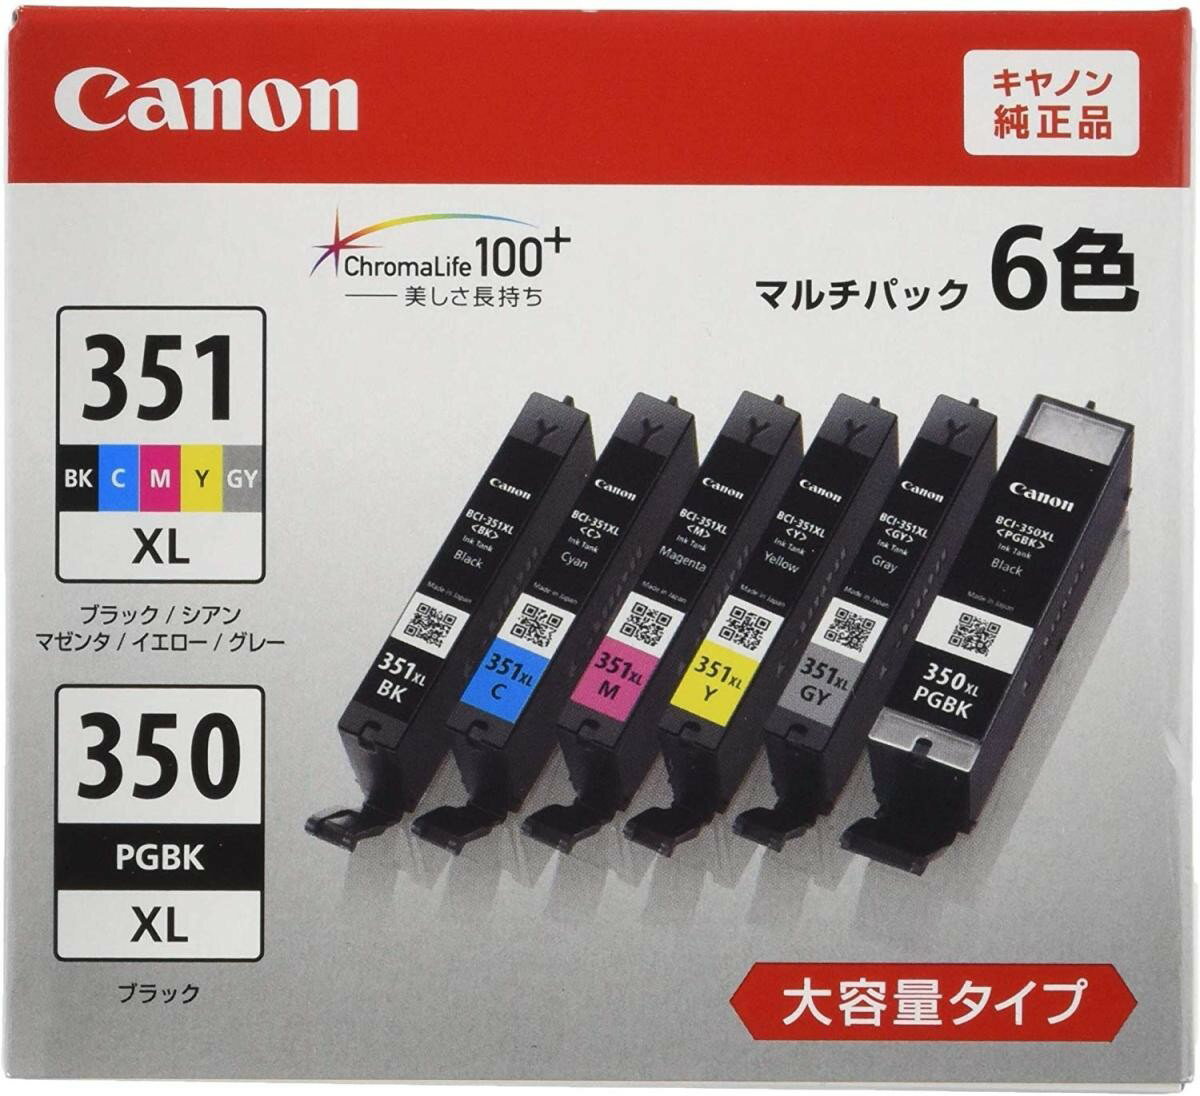 Canon 純正 インク カートリッジ BCI-351XL(BK/C/M/Y/GY) BCI-350XL 6色マルチパック 大容量タイプ BCI-351XL 350XL/6MP